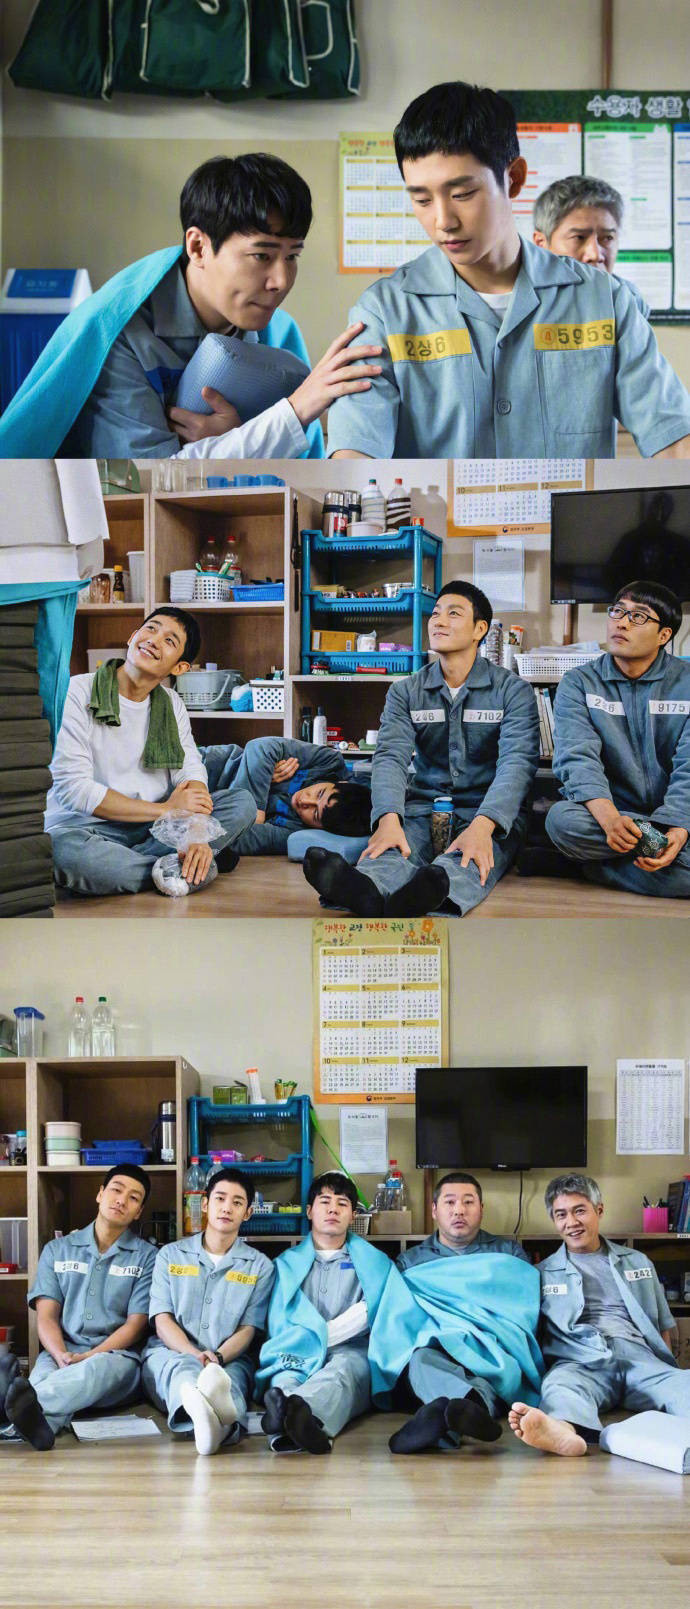 安利一部韩剧《机智的监狱生活 》温暖治愈的一部 电视剧